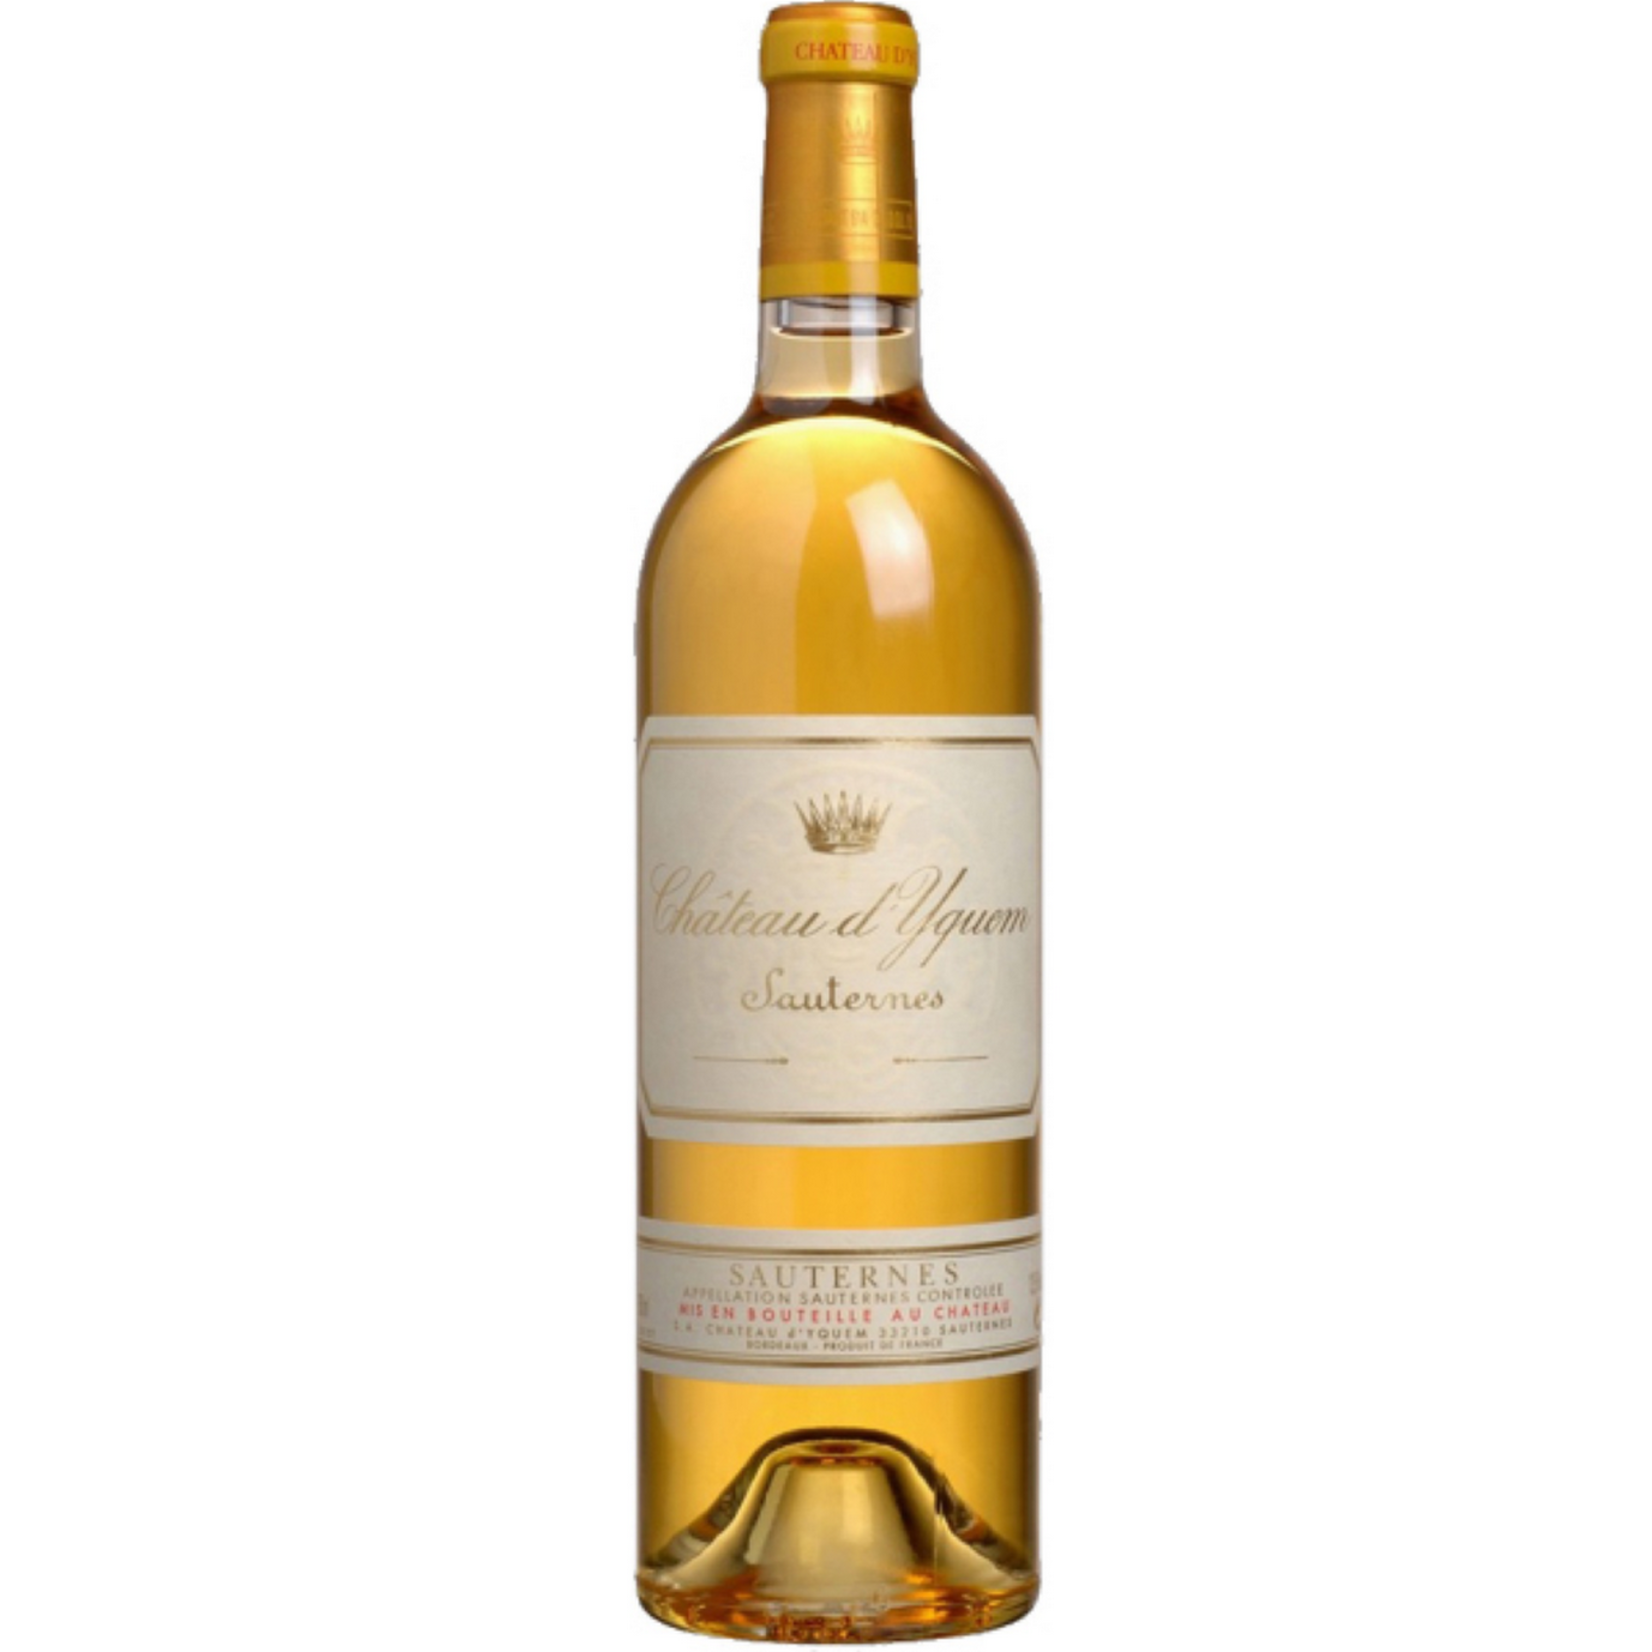 2006, Chateau d'Yquem, Semillon- Sauvignon Blanc Blend, Sauternes, Bordeaux, France, 14% Alc, CT93.9